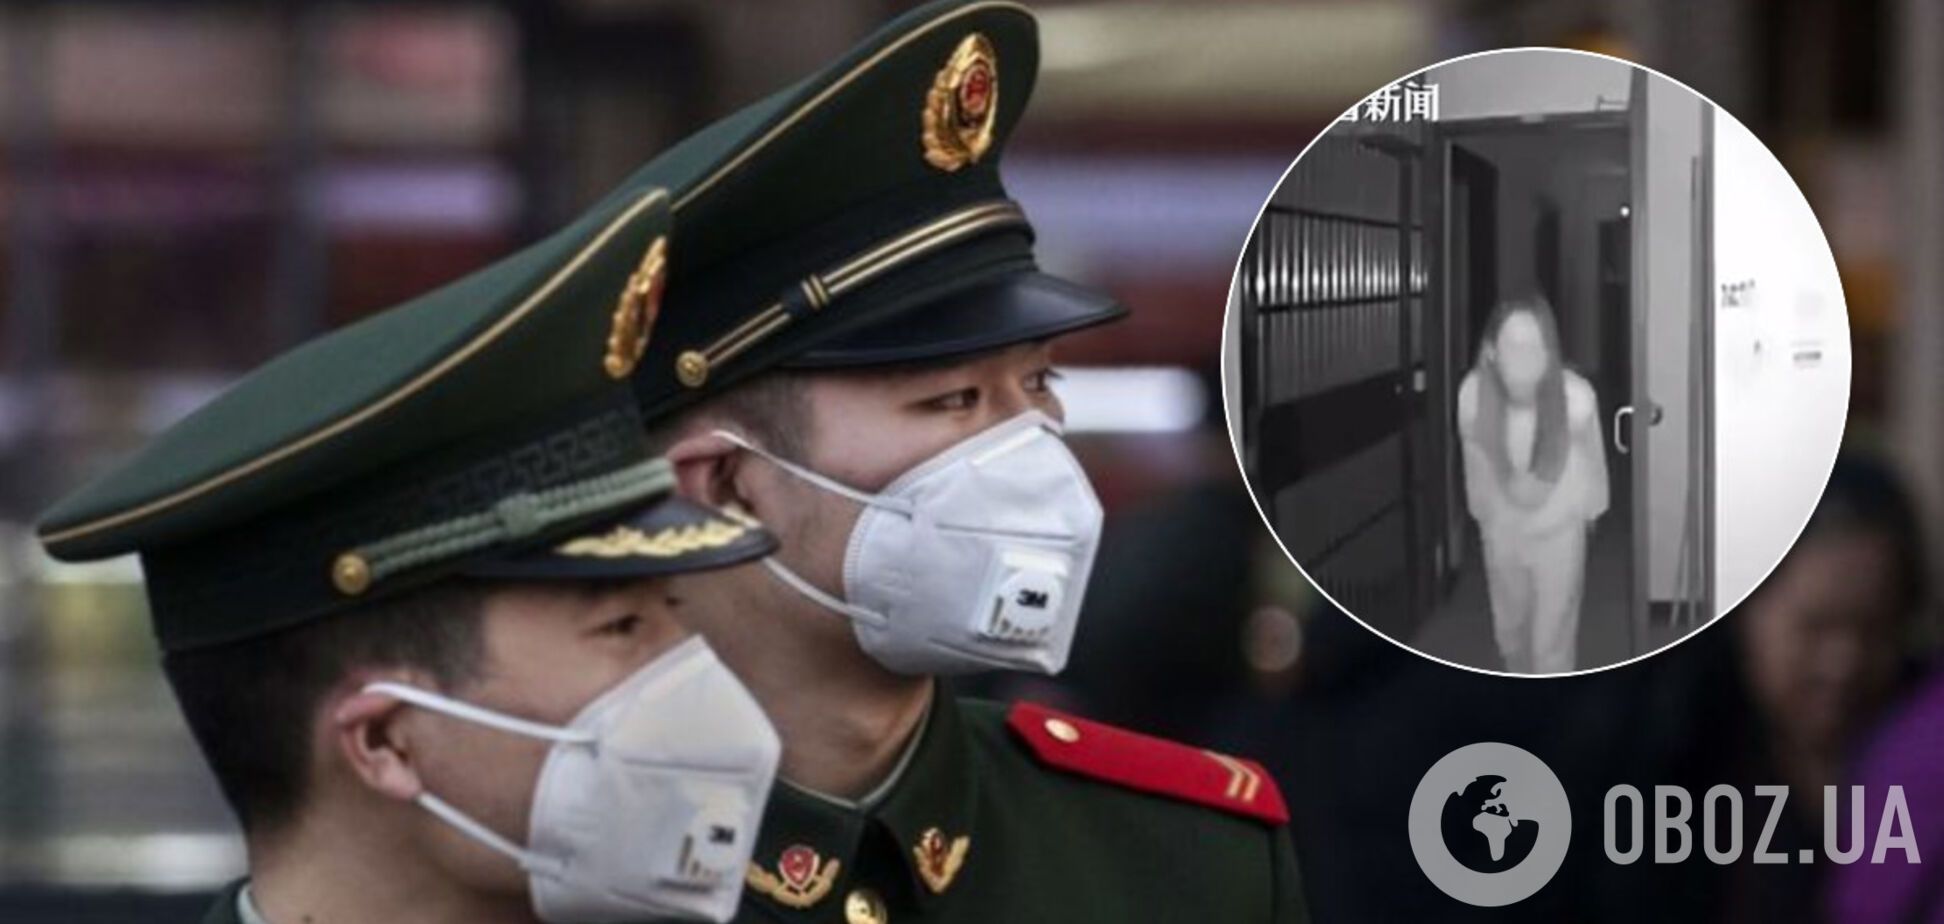 'Плювалася інфекцією!' У Китаї жінку звинуватили в 'поширенні' коронавірусу